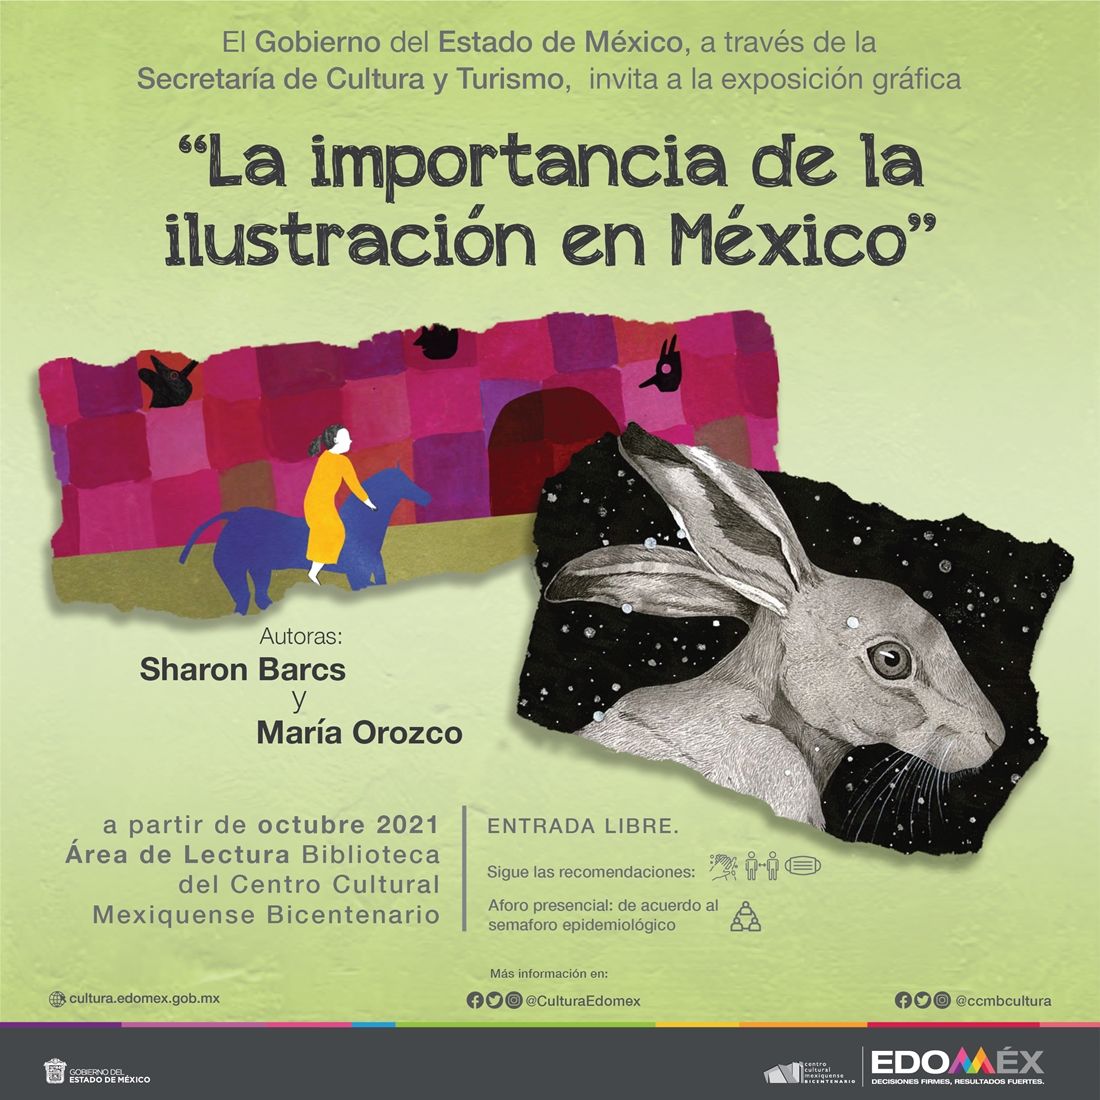 Exhibe centro cultural mexiquense bicentenario exposición ’la importancia de la ilustración en Mexico’ 